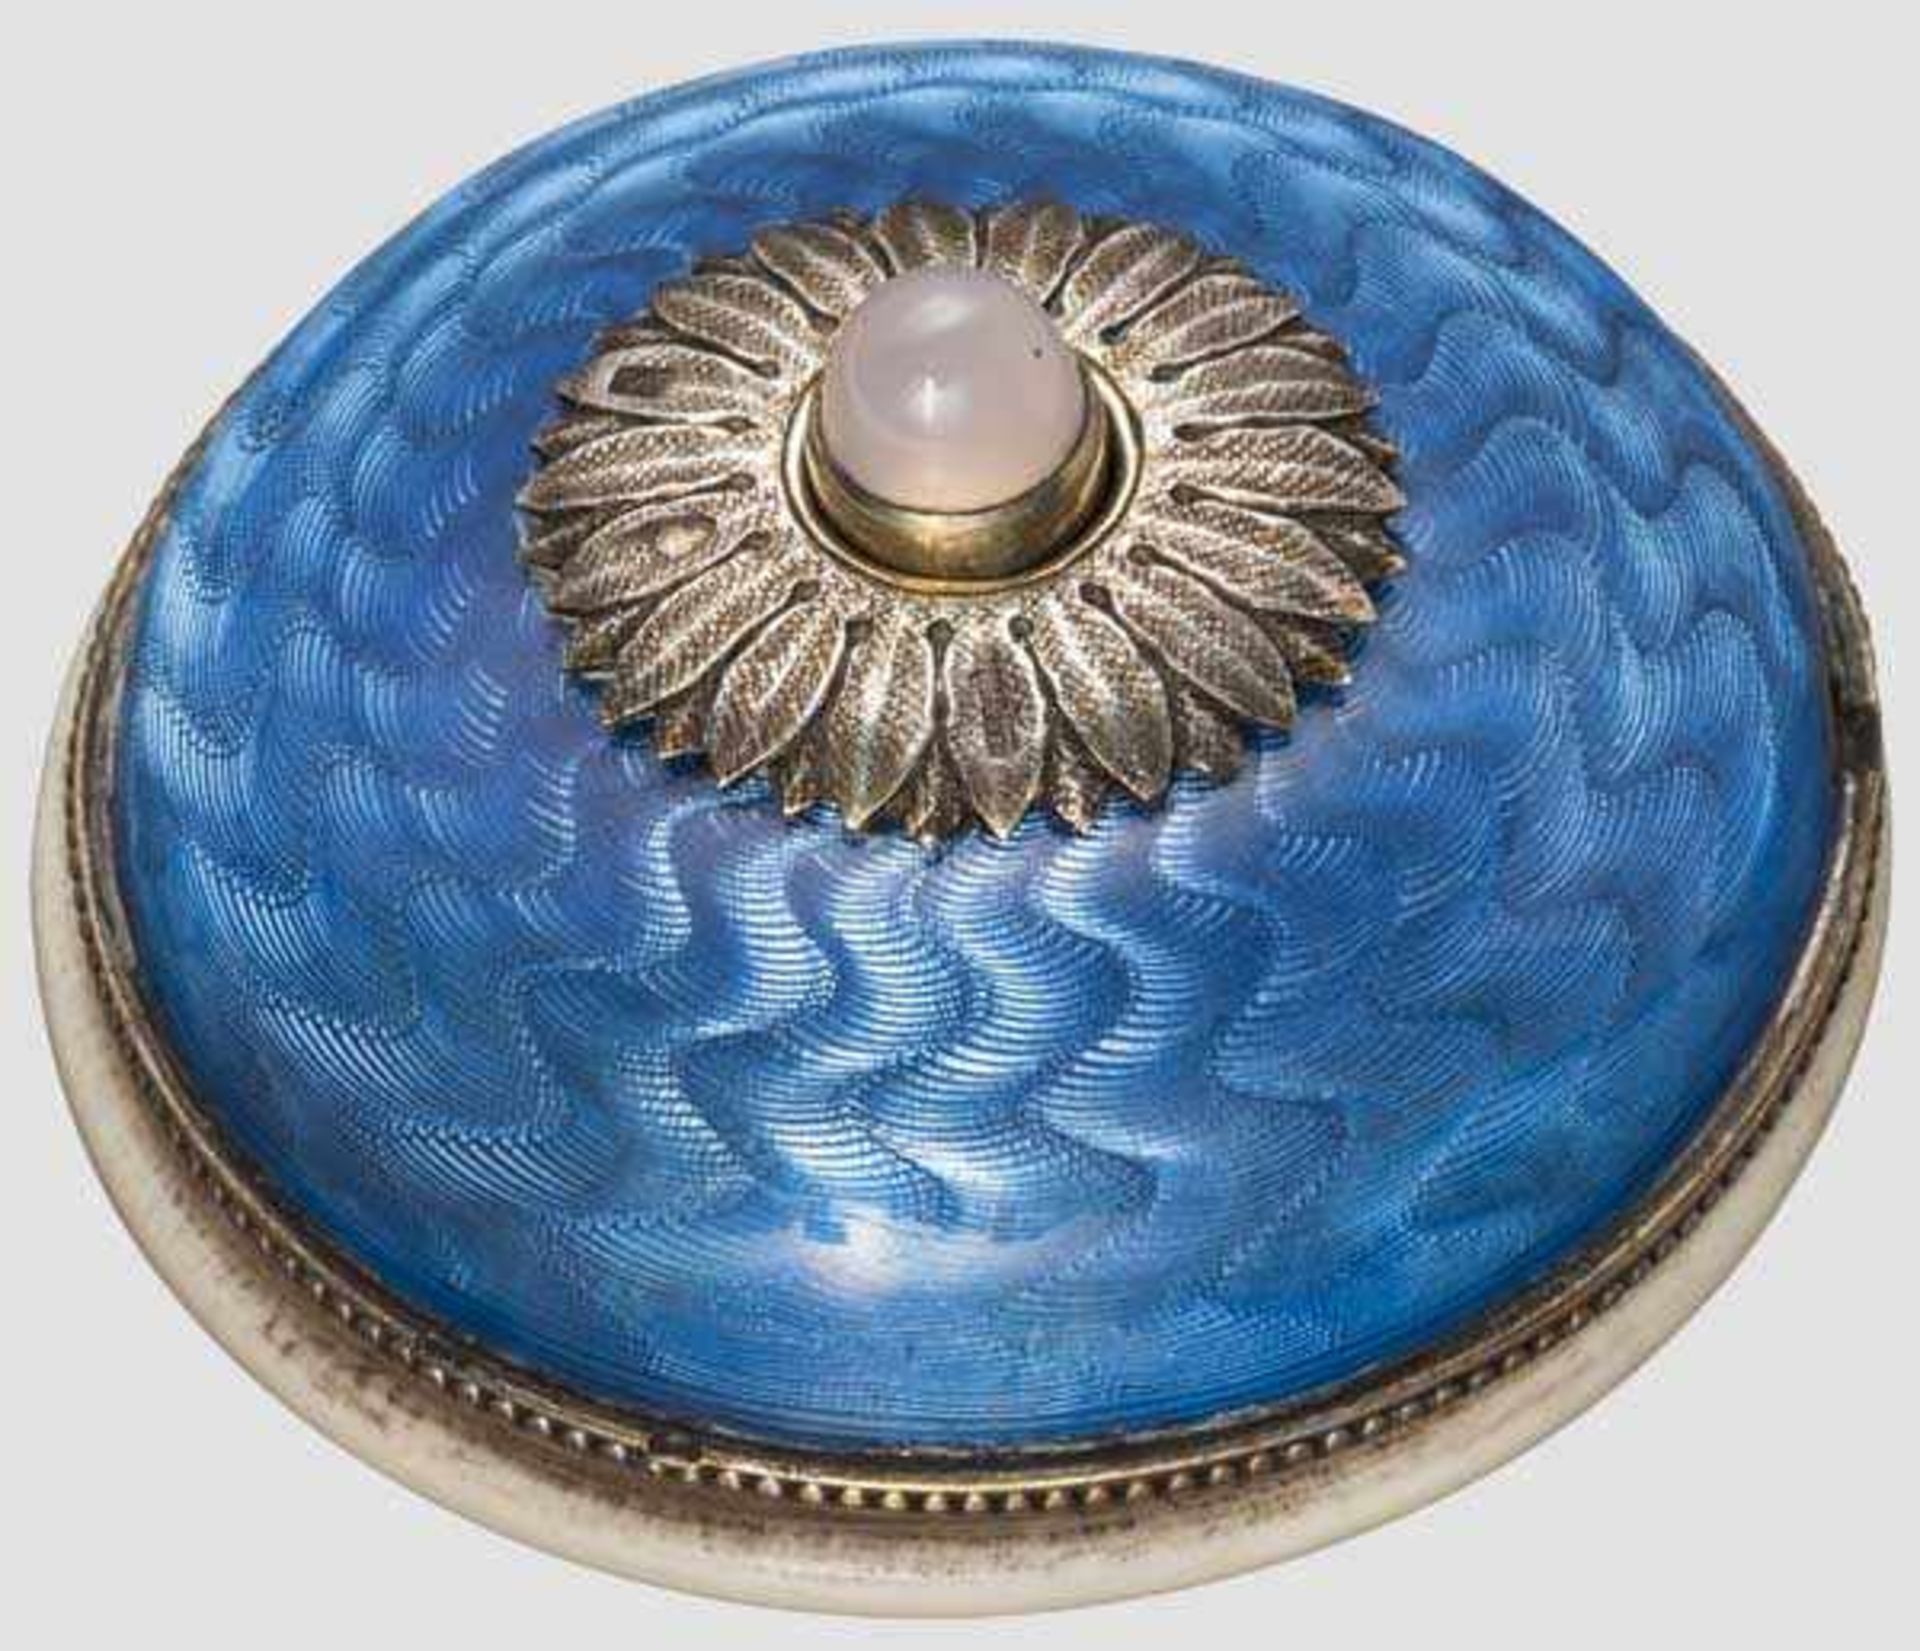 Tischklingel im Fabergé-Stil, Russland, 20 Jhdt. Runde Klingel mit fein guillochiertem und blau